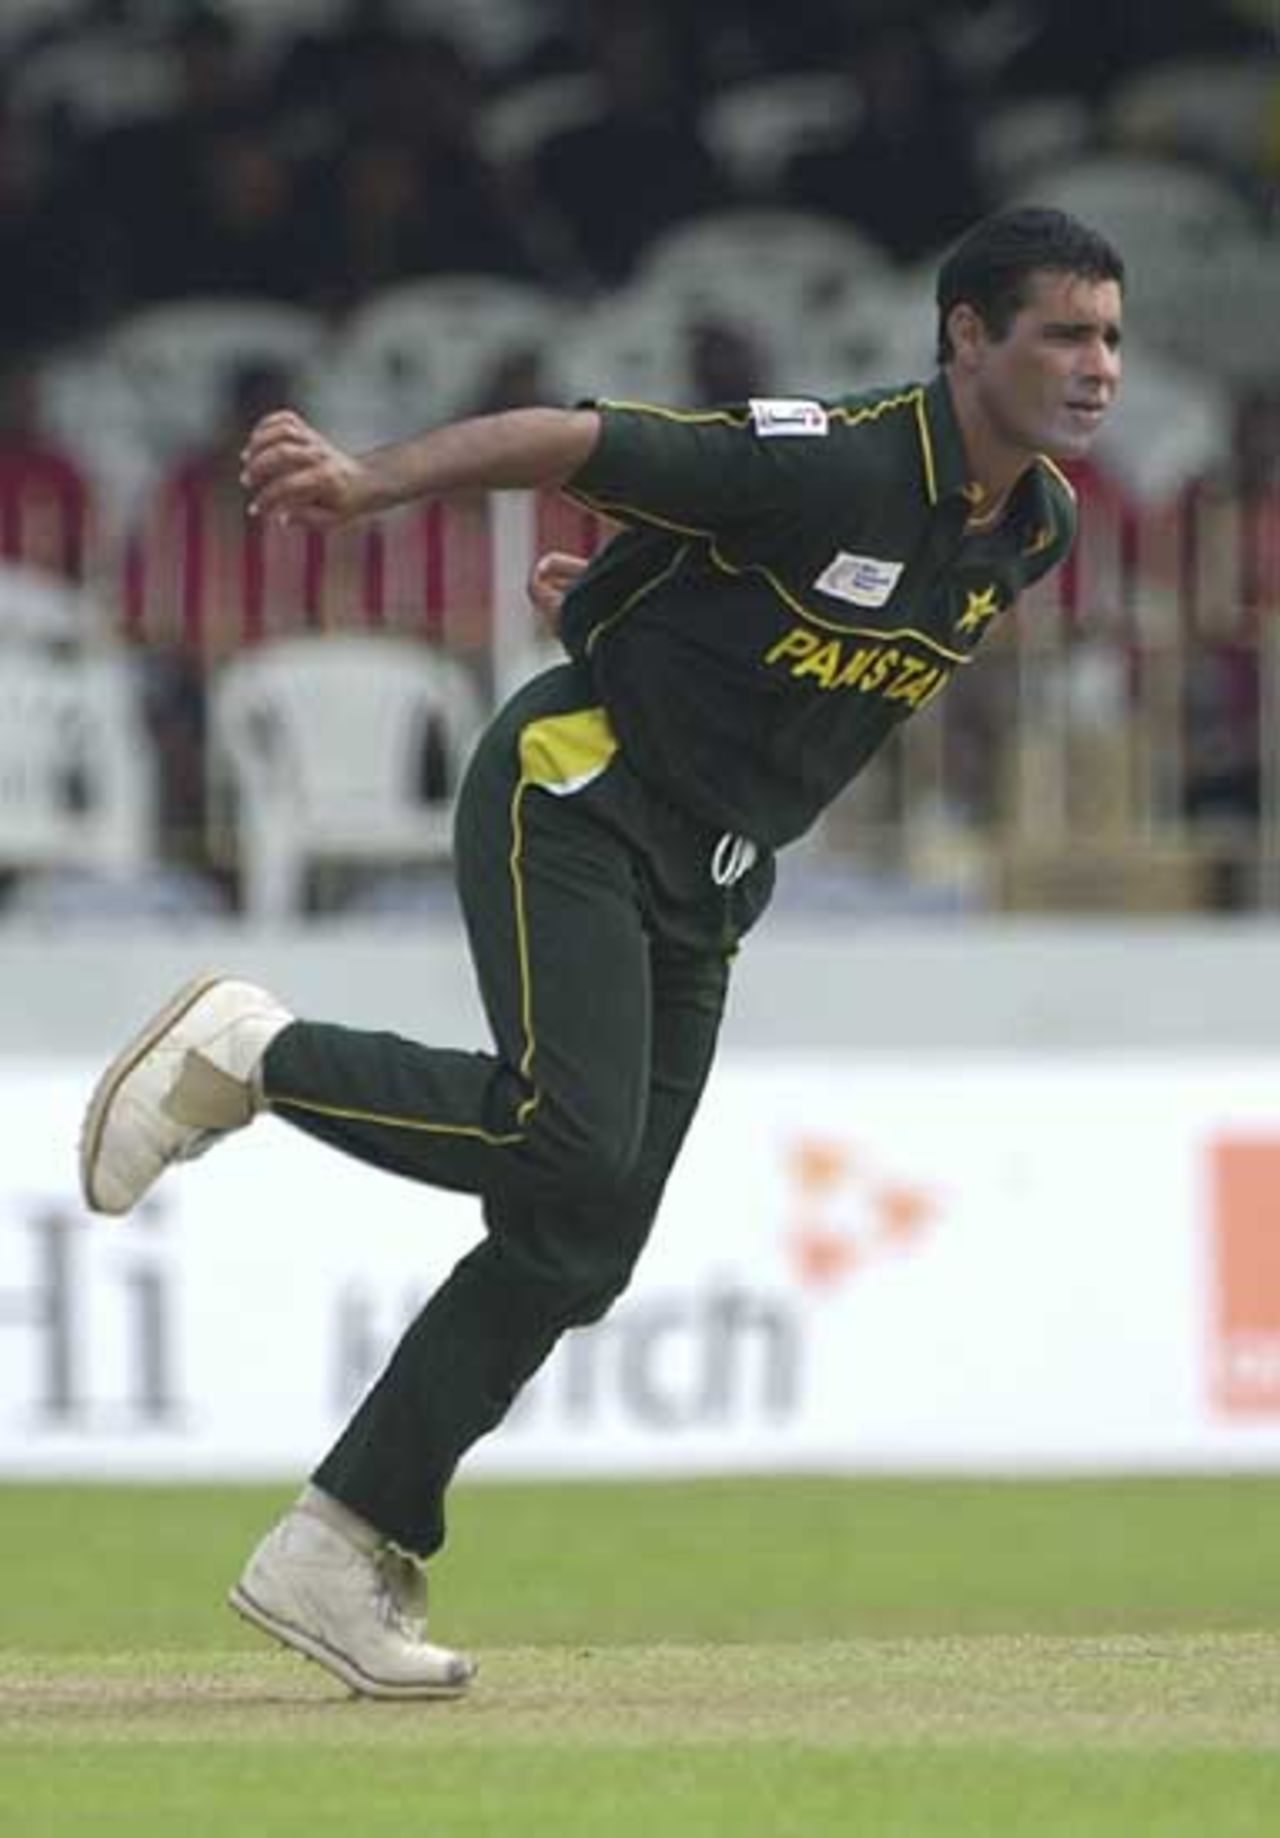 ICC Champions Trophy, Netherlands v Pakistan, 21st September 2002, Colombo (SSC)